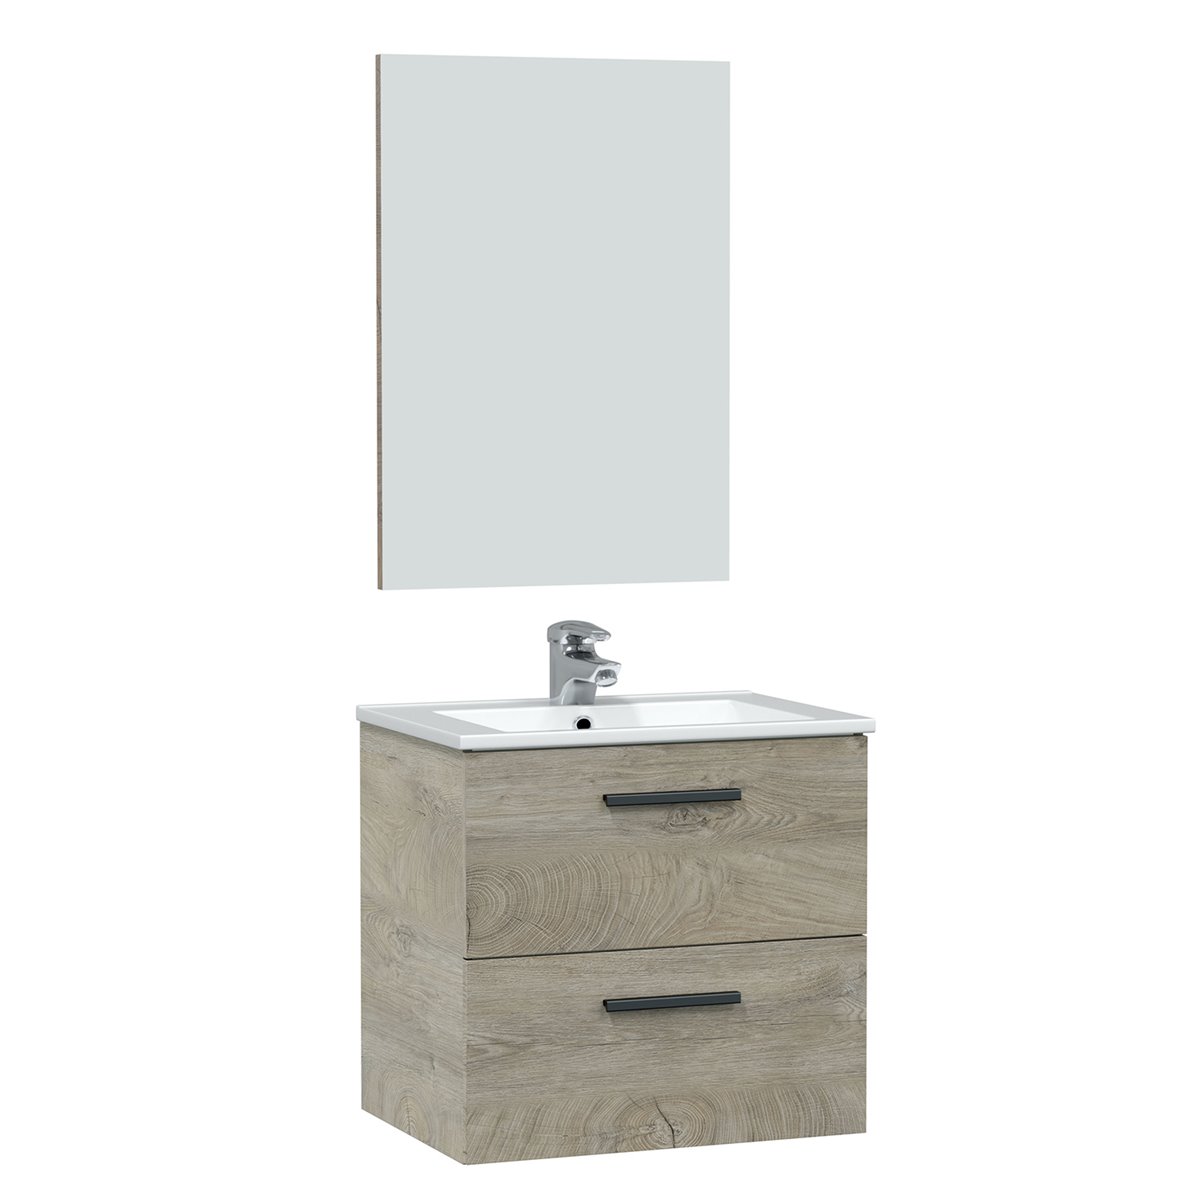 Mueble baño suspendido Axel 2 cajones espejo, sin lavabo, Cemento -  Conforama